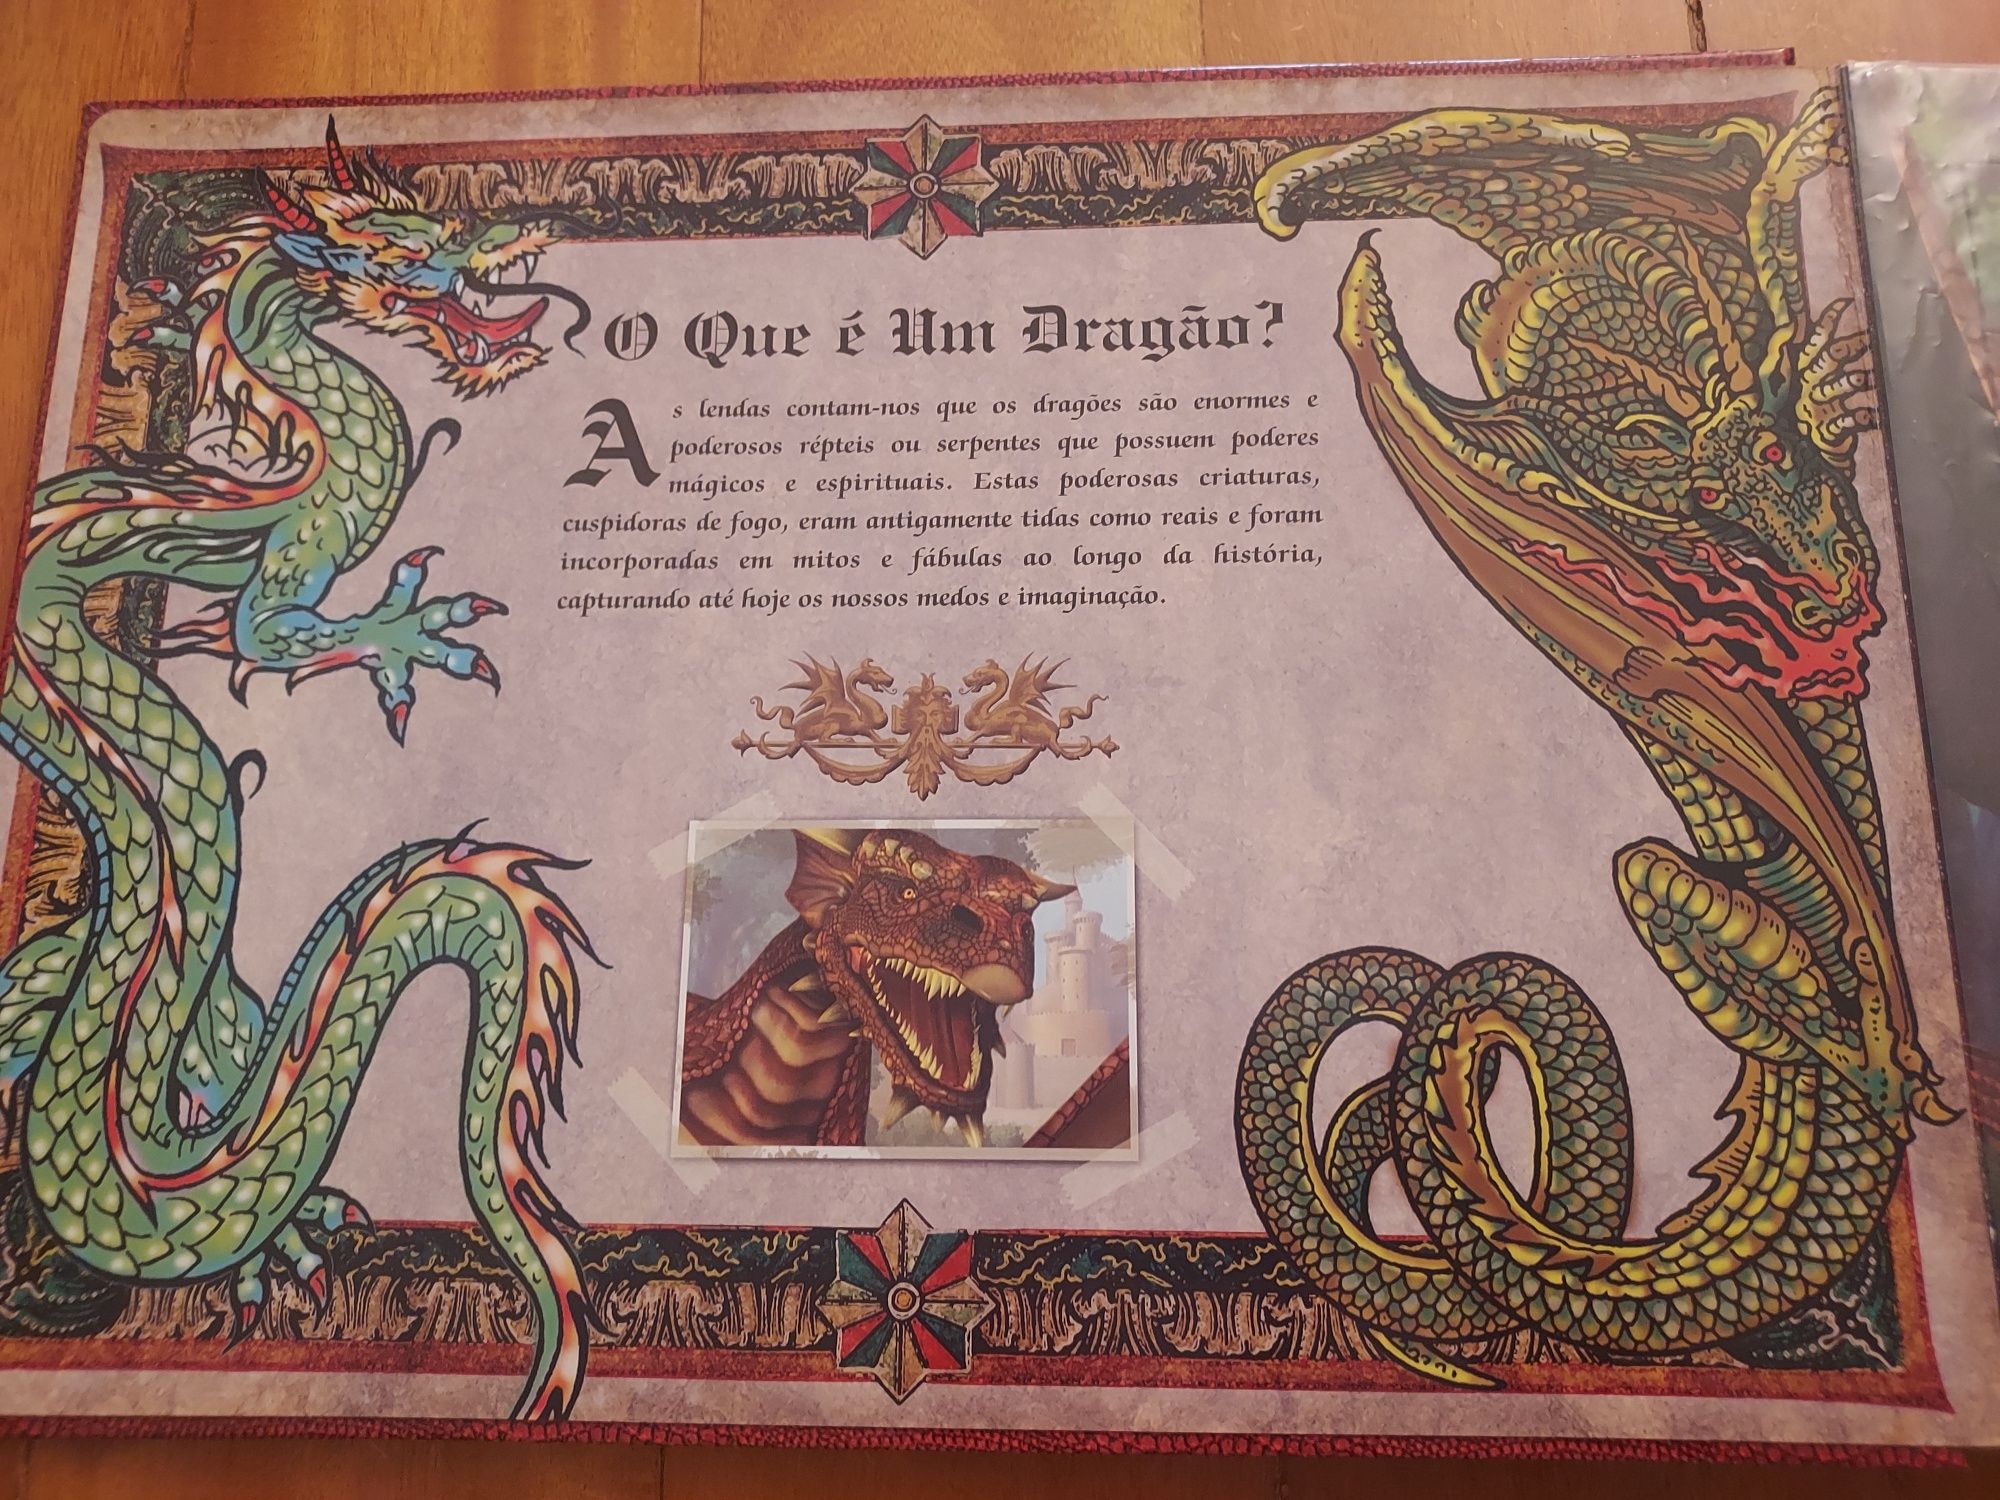 O Livro dos Dragões (Puzzle) - NOVO